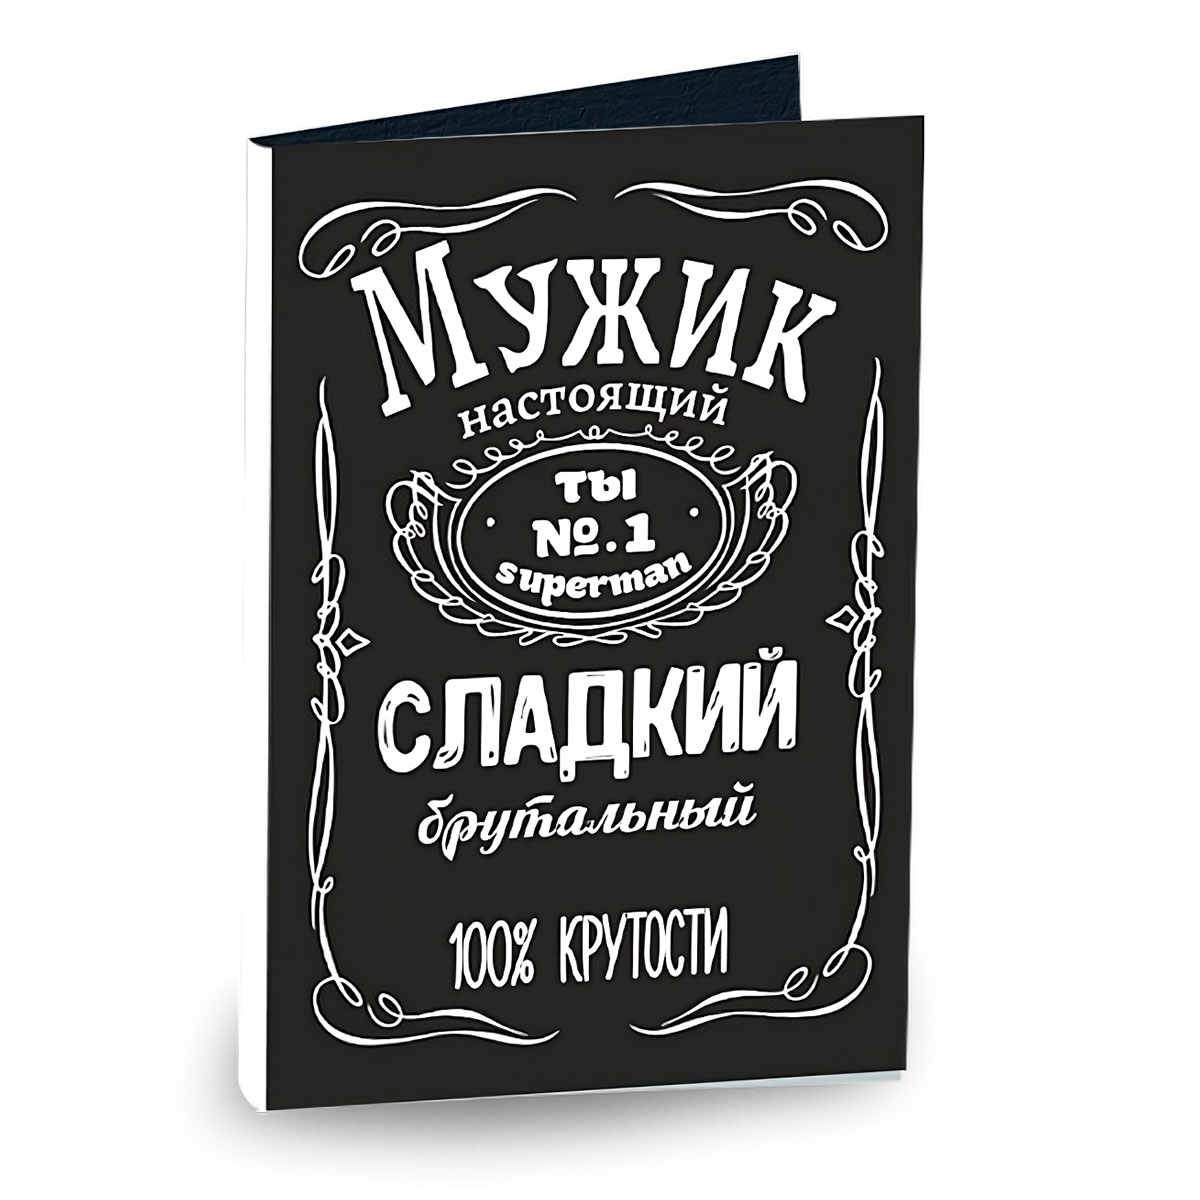 Товары по запросу «Открытки почтовые» в городе Syktyvkar